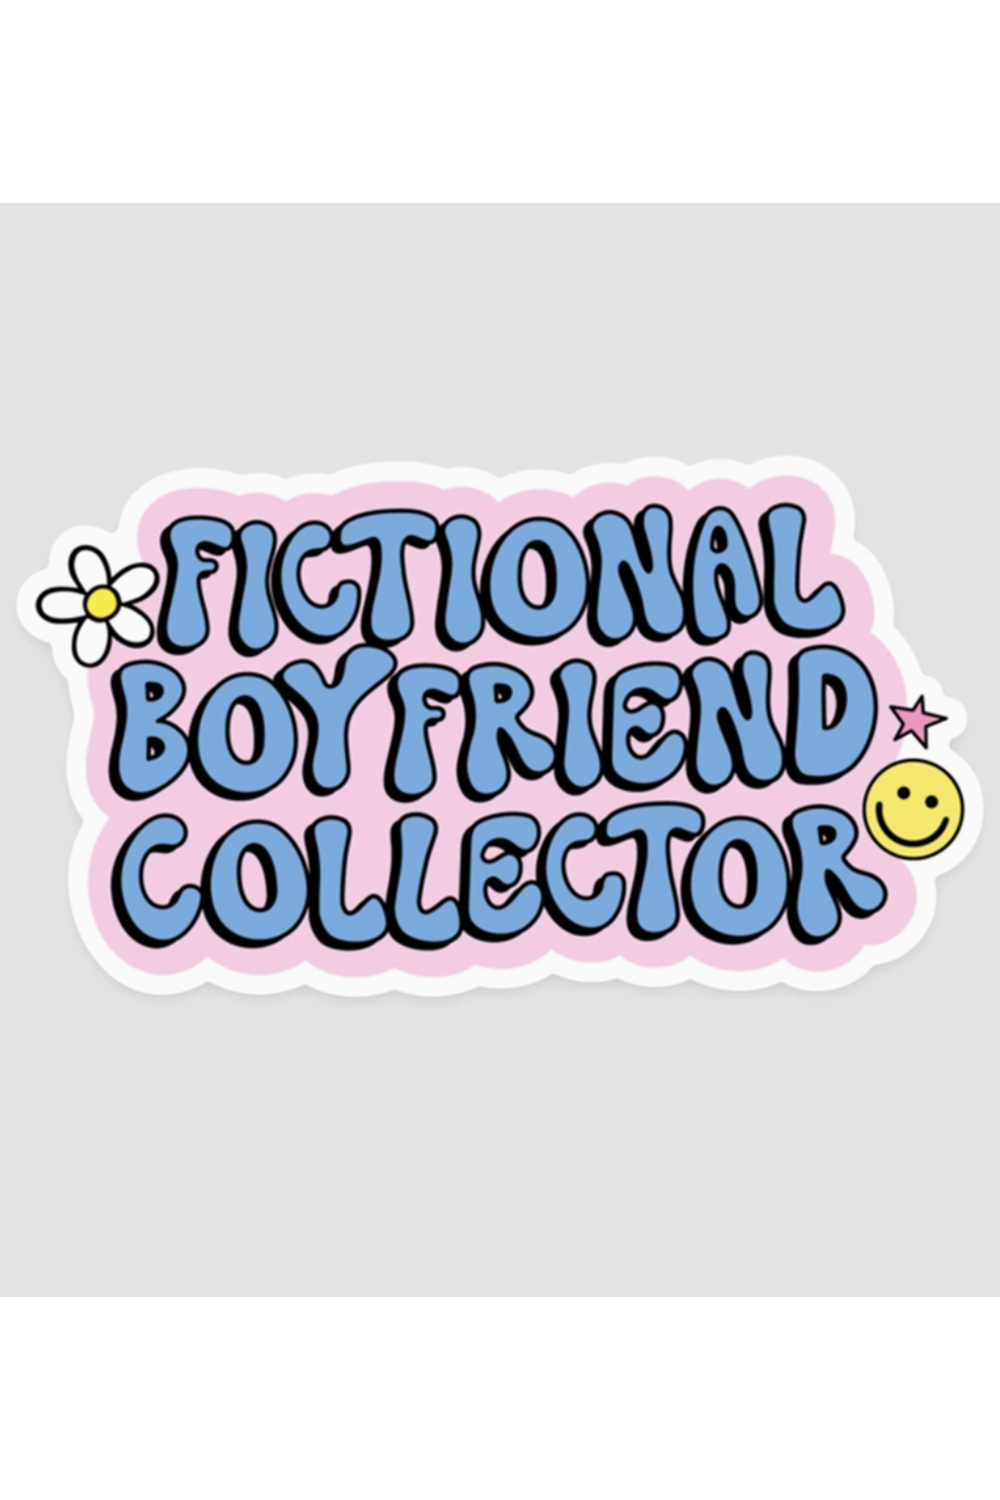 Trendy Sticker - Fictional Boyfriend Collector